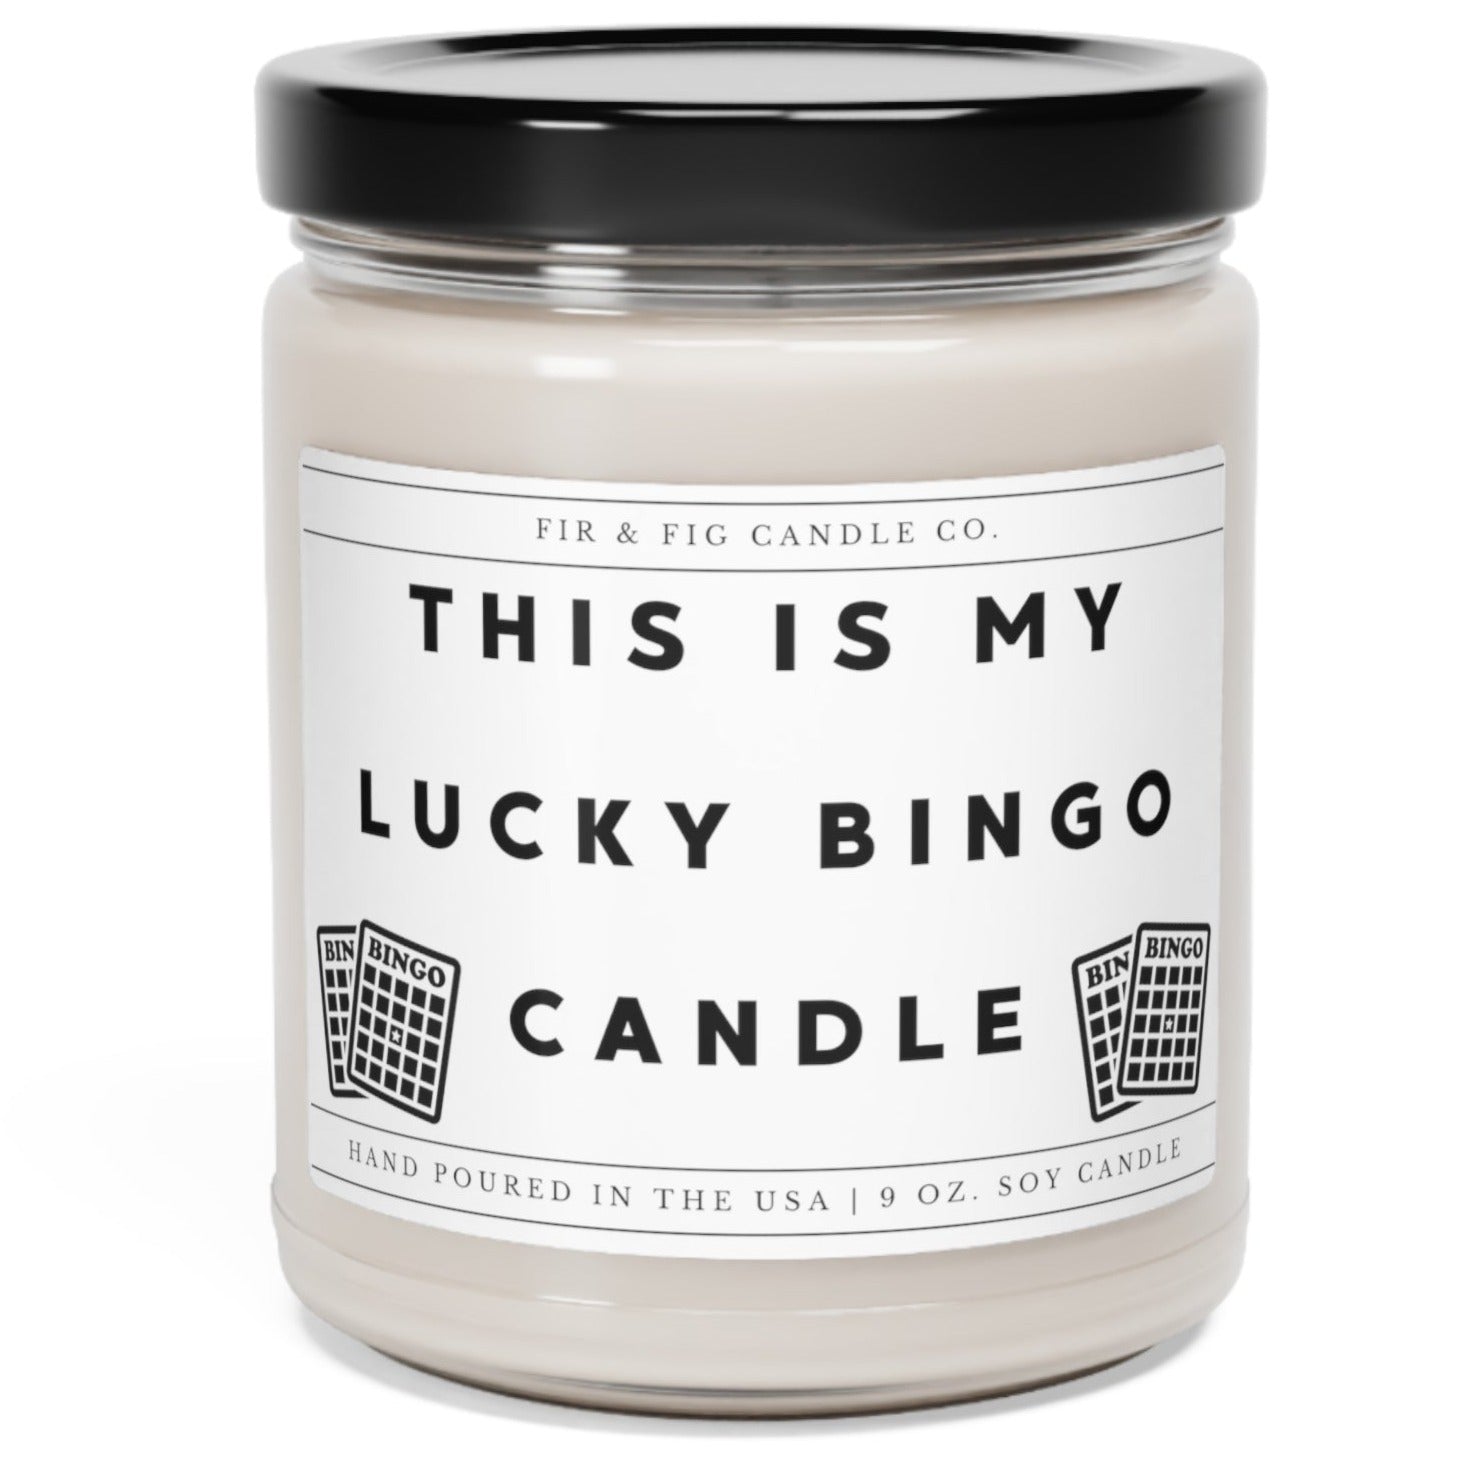 This is my lucky BINGO 100% Eco-Friendly 9oz Soy Candle, Bingo Candle, Gift for bingo player, Bingo Good Luck Charm, candle Gift, Bingo Gift